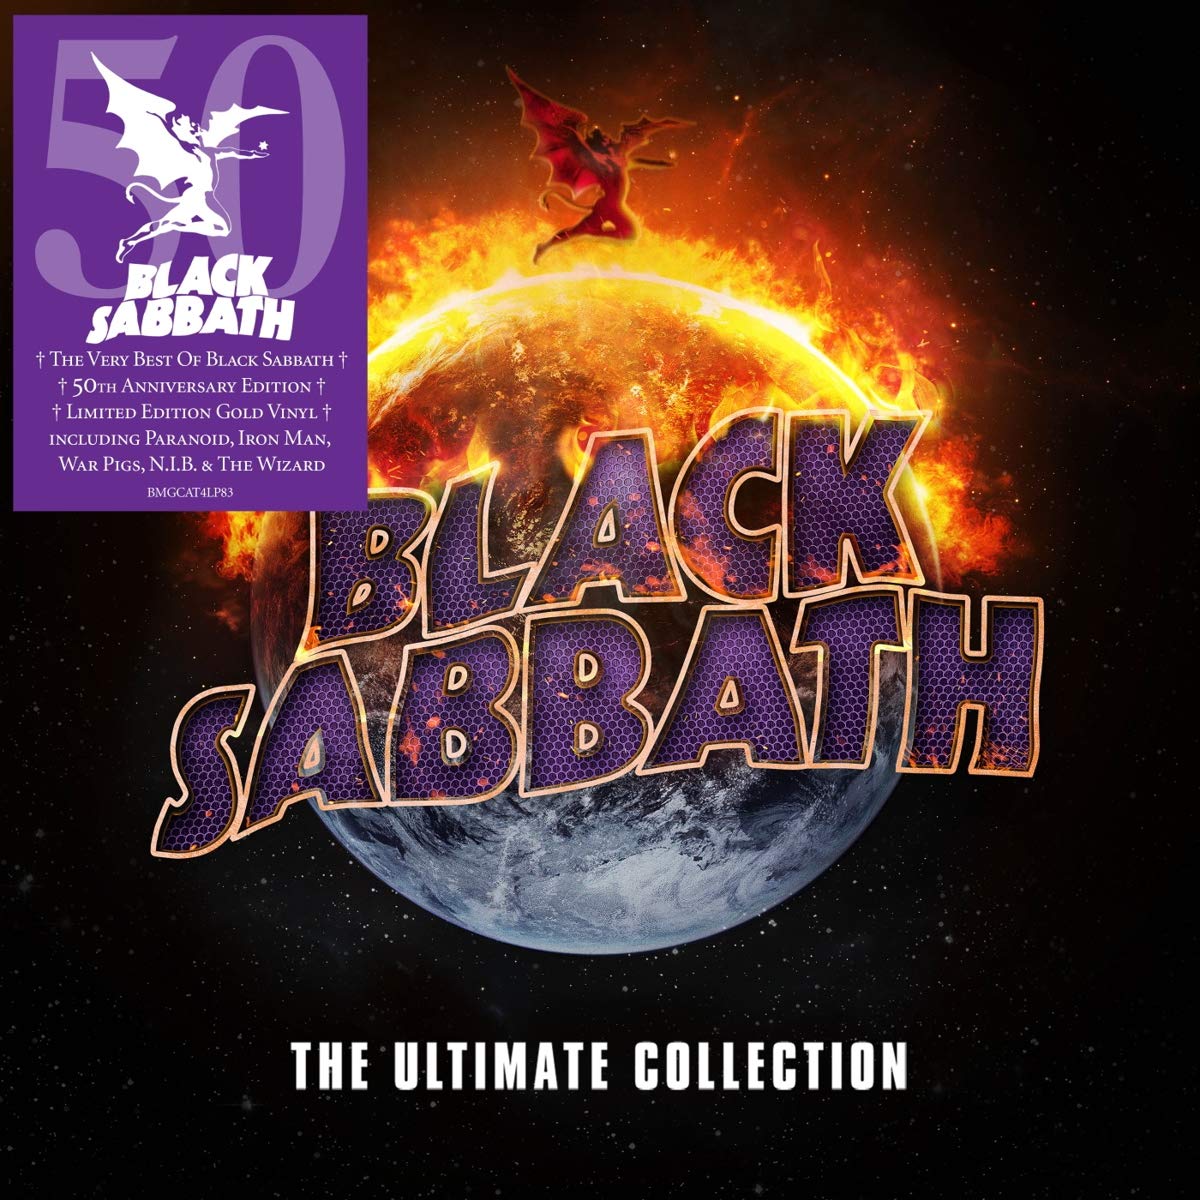 Black Sabbath – The Ultimate Collection (Ltd. Gold Vinyl) [4LP] Import